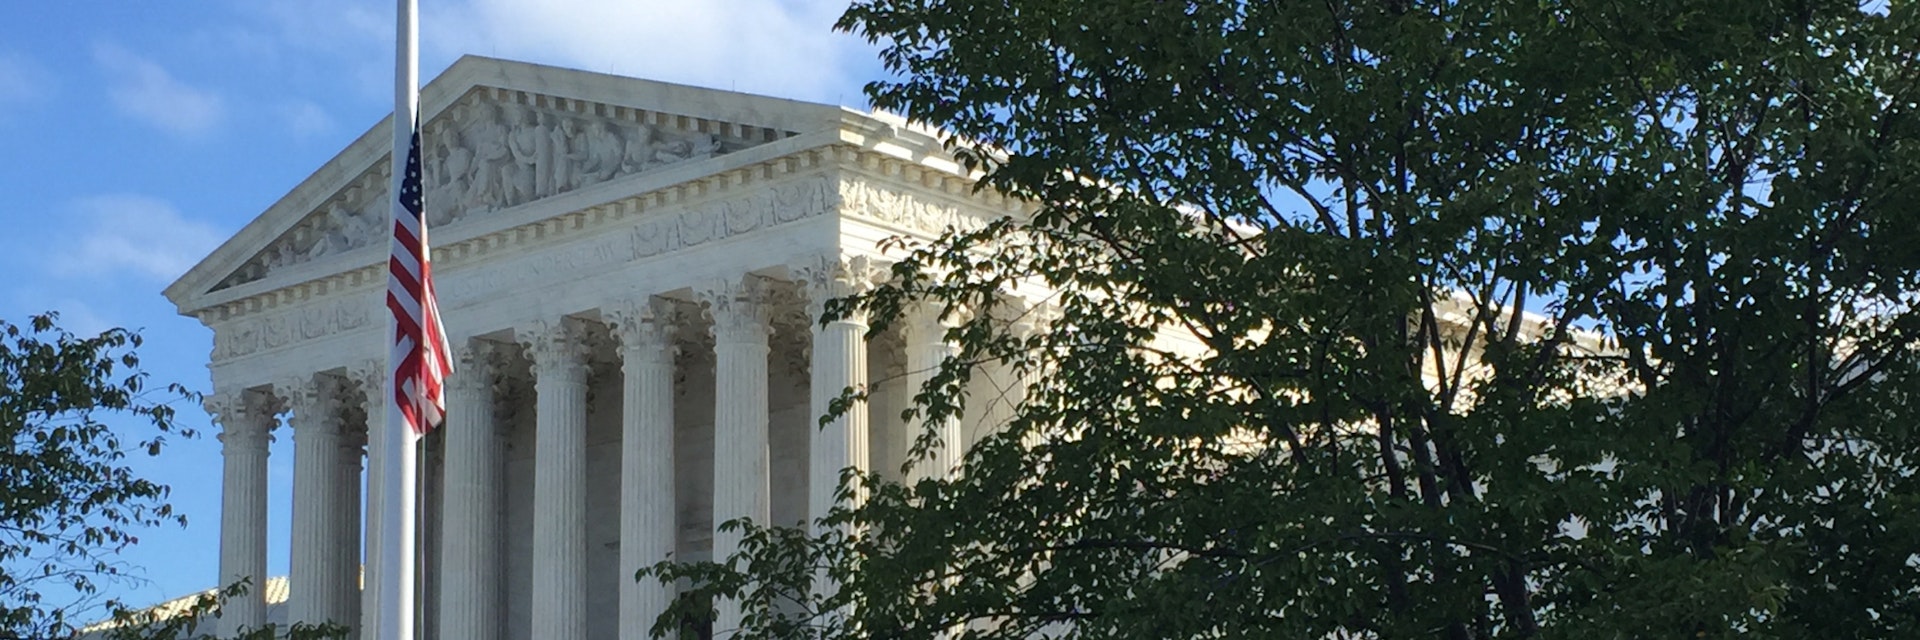 Facade of Supreme Court.